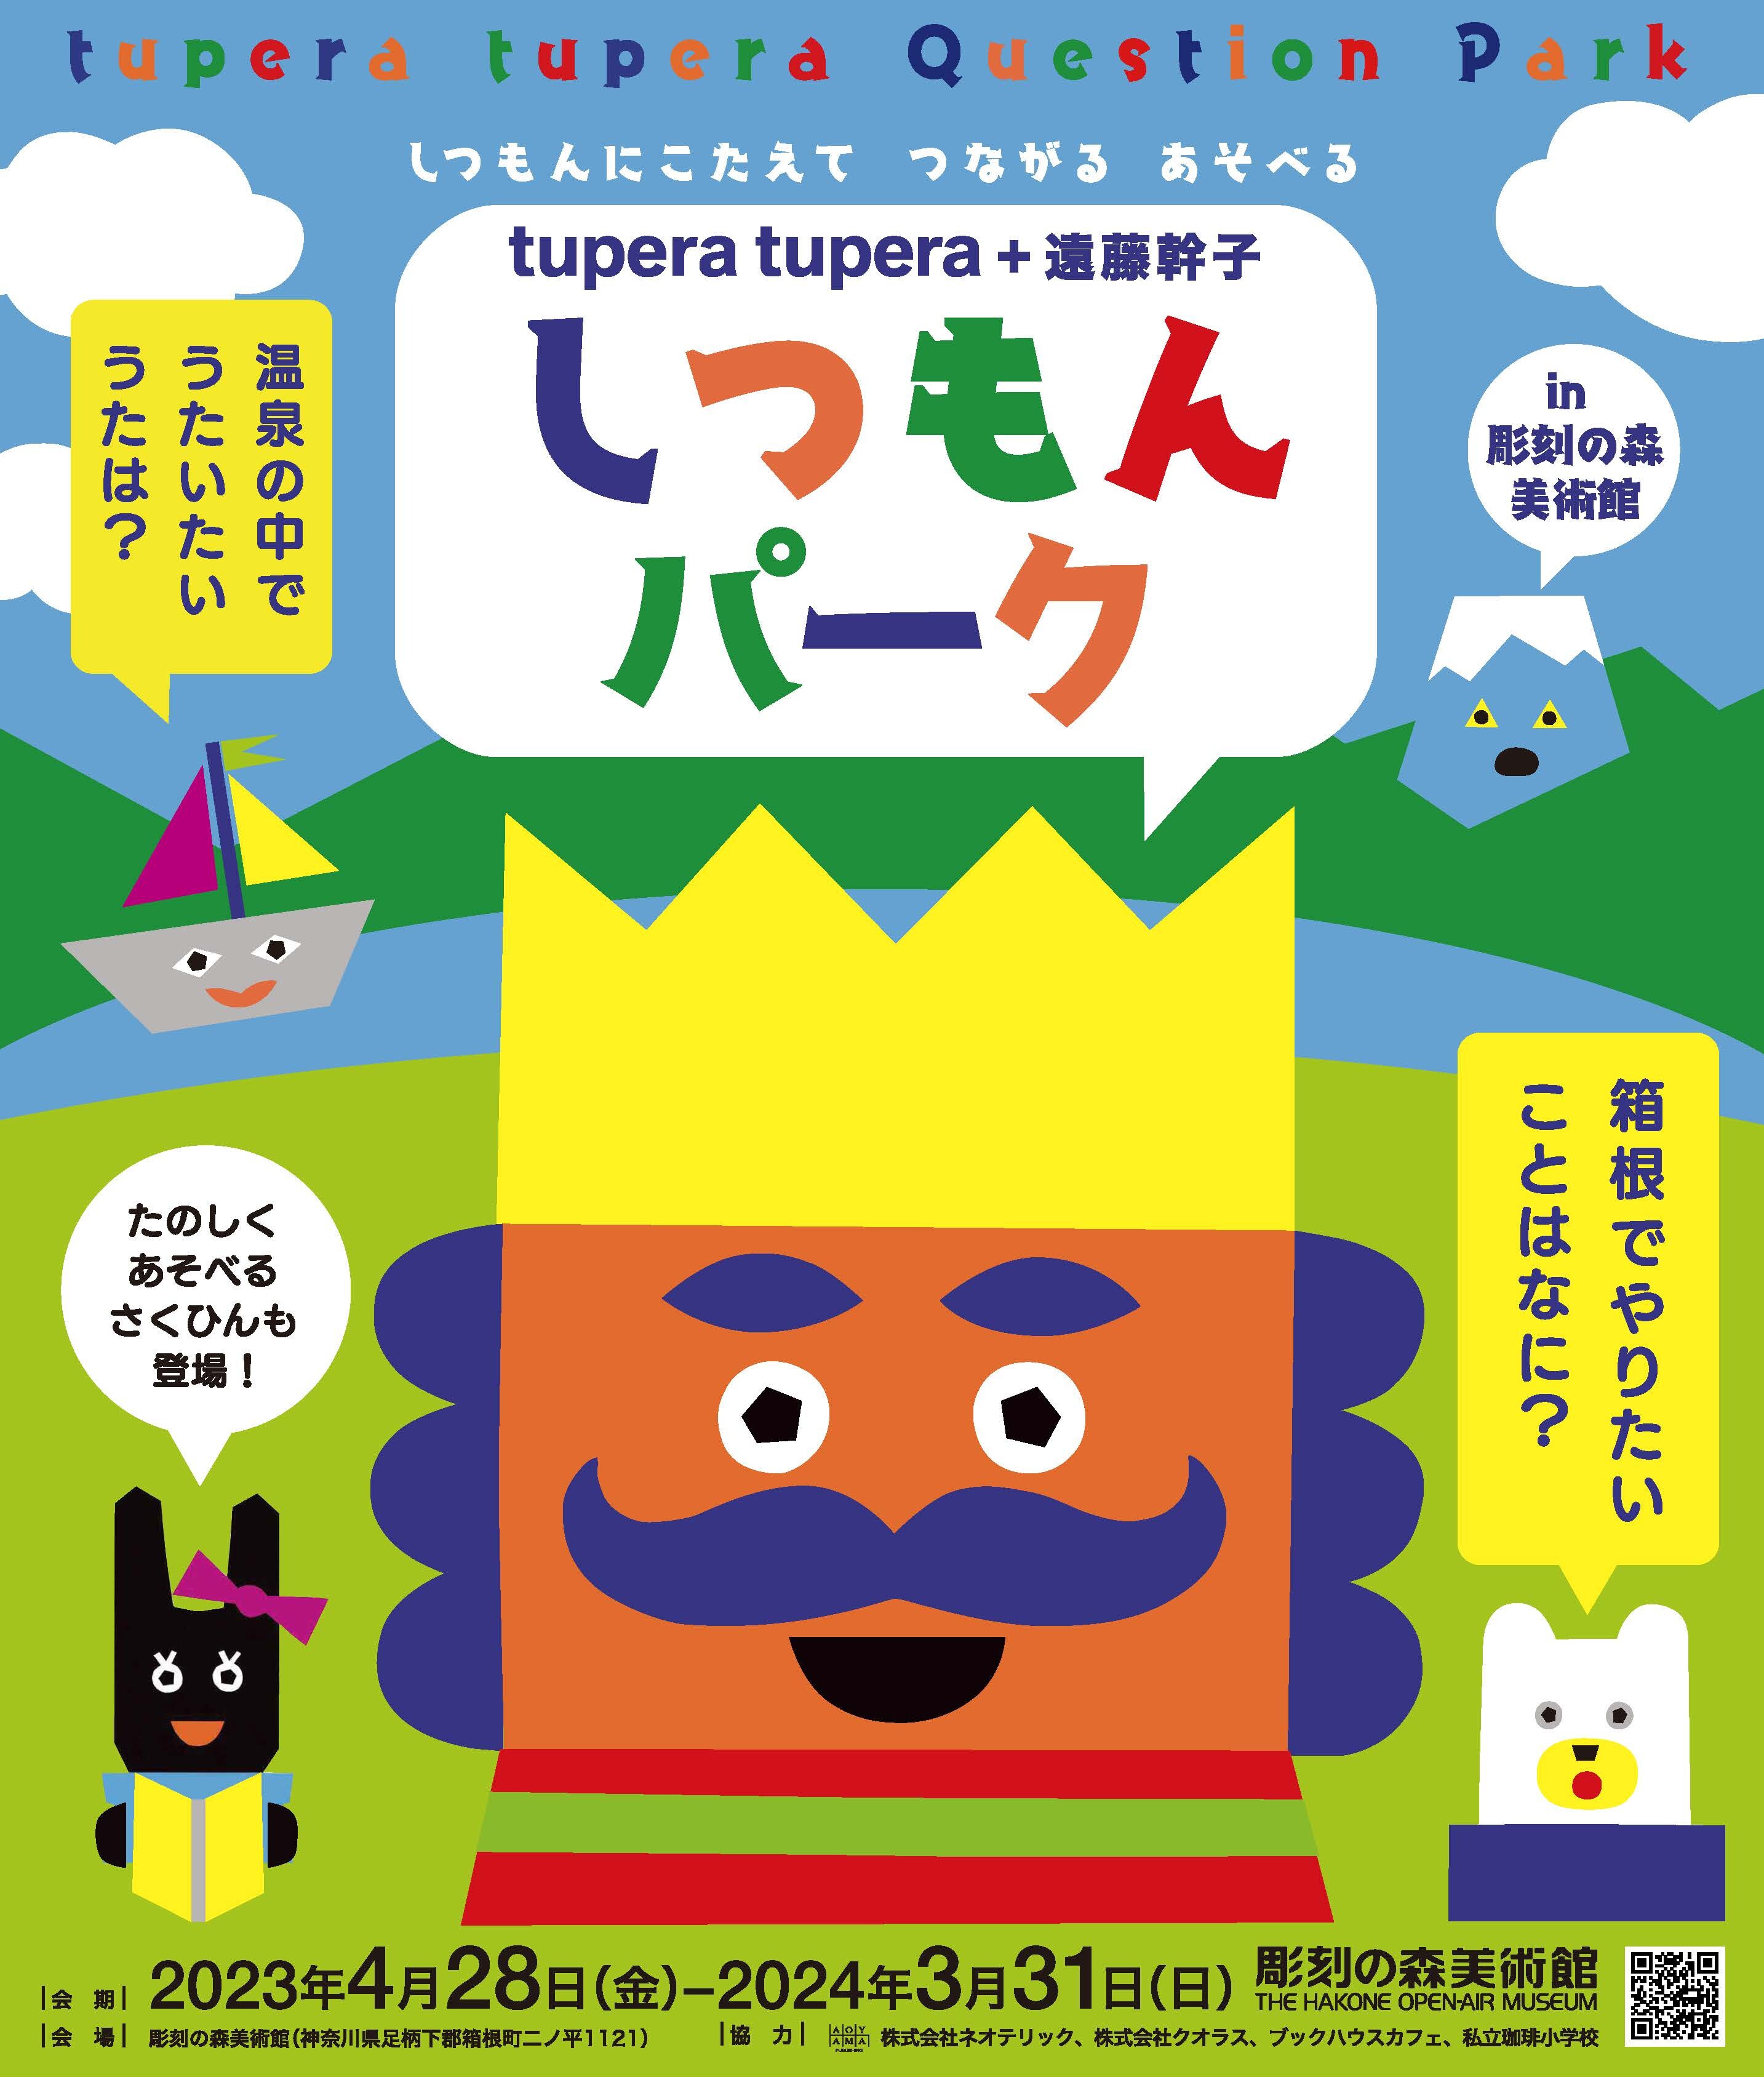 tupera tupera + 遠藤幹子 しつもんパーク in 彫刻の森美術館」 美術館で質問に答えながらもっと仲良くなろう –  神奈川・東京多摩のご近所情報 – レアリア